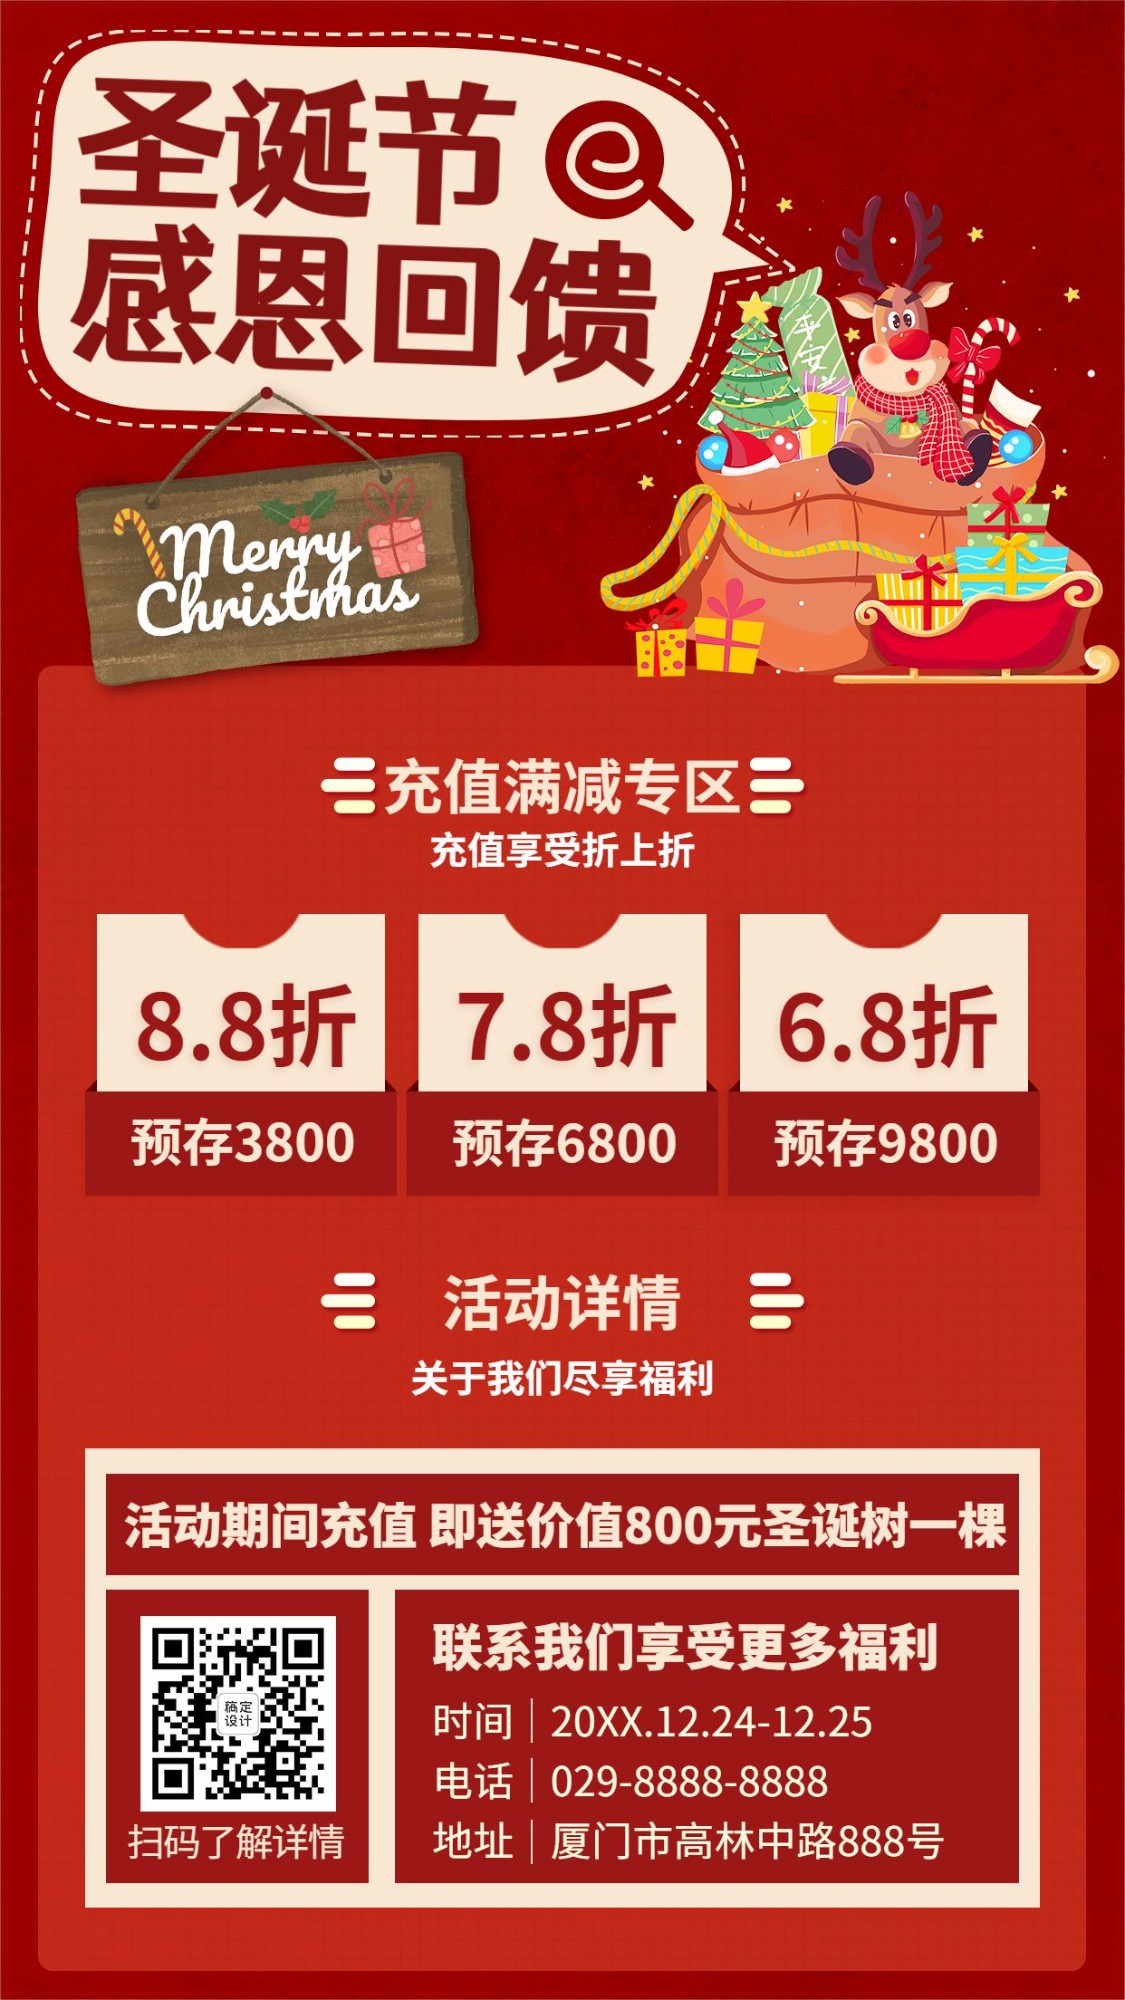 圣诞节活动福利促销插画手机海报